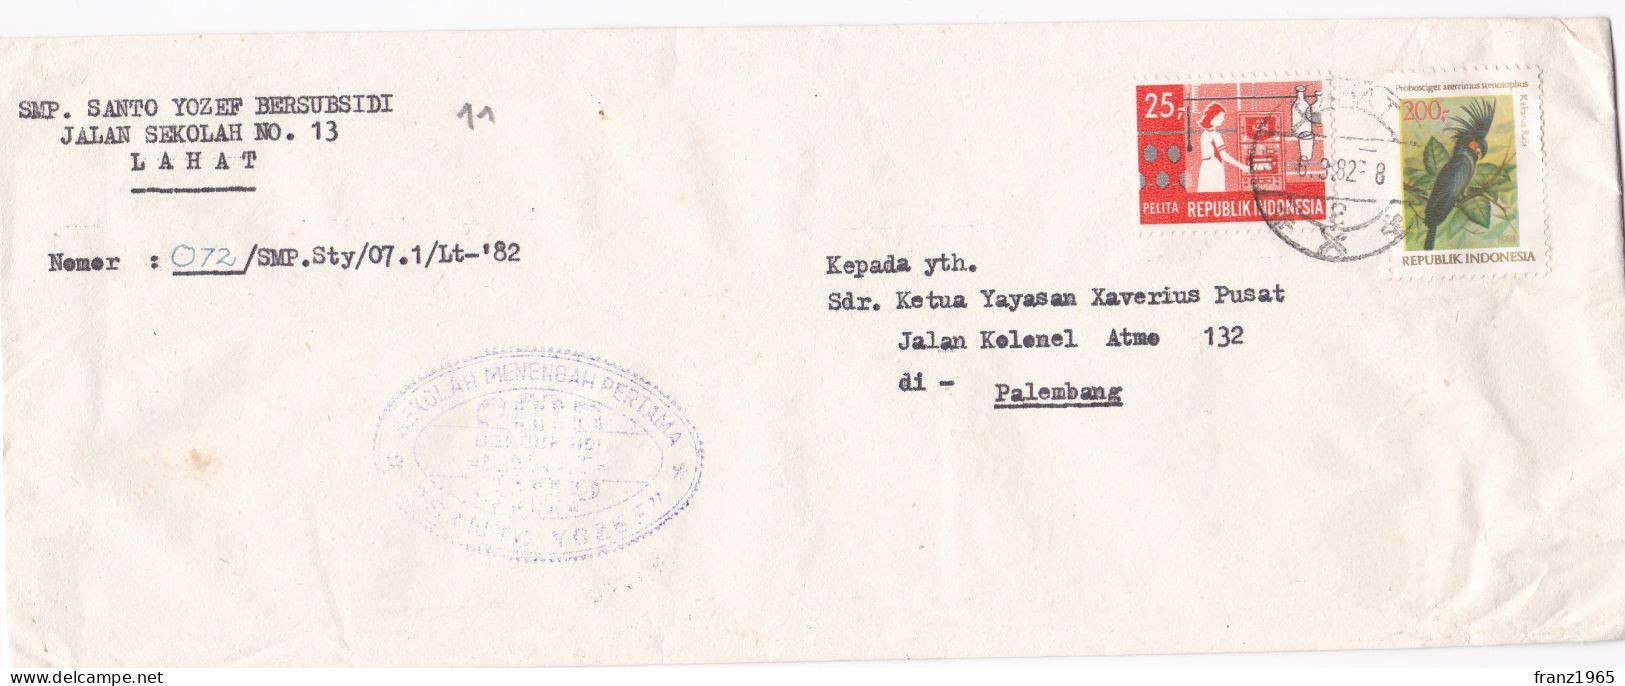 Postal History - 1982 - Indonesië